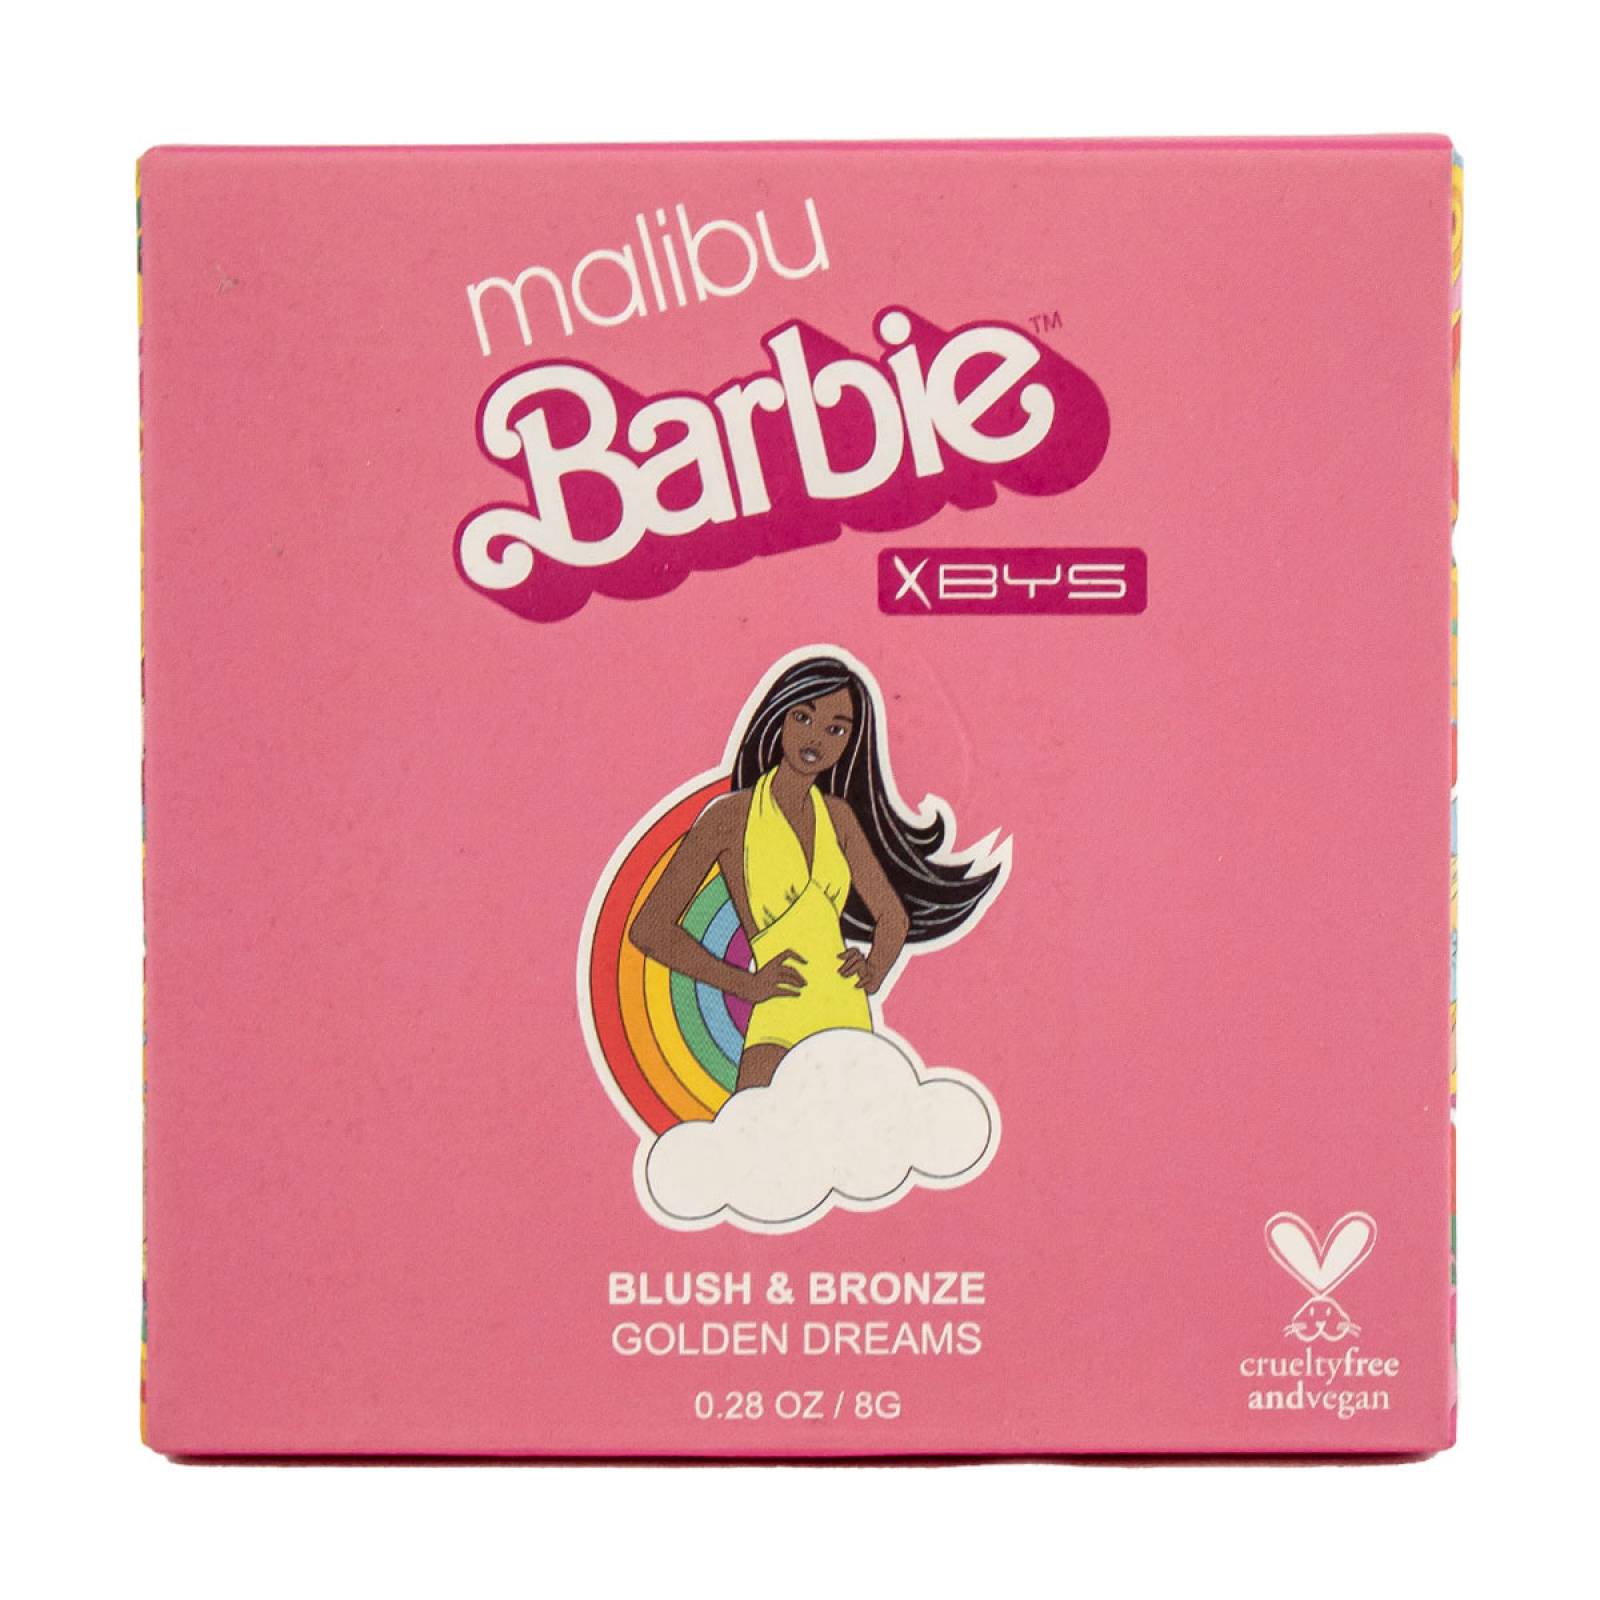 Rubor Y Bronceador Blush & Bronzer Barbie Malibu X Bys Cosmetics